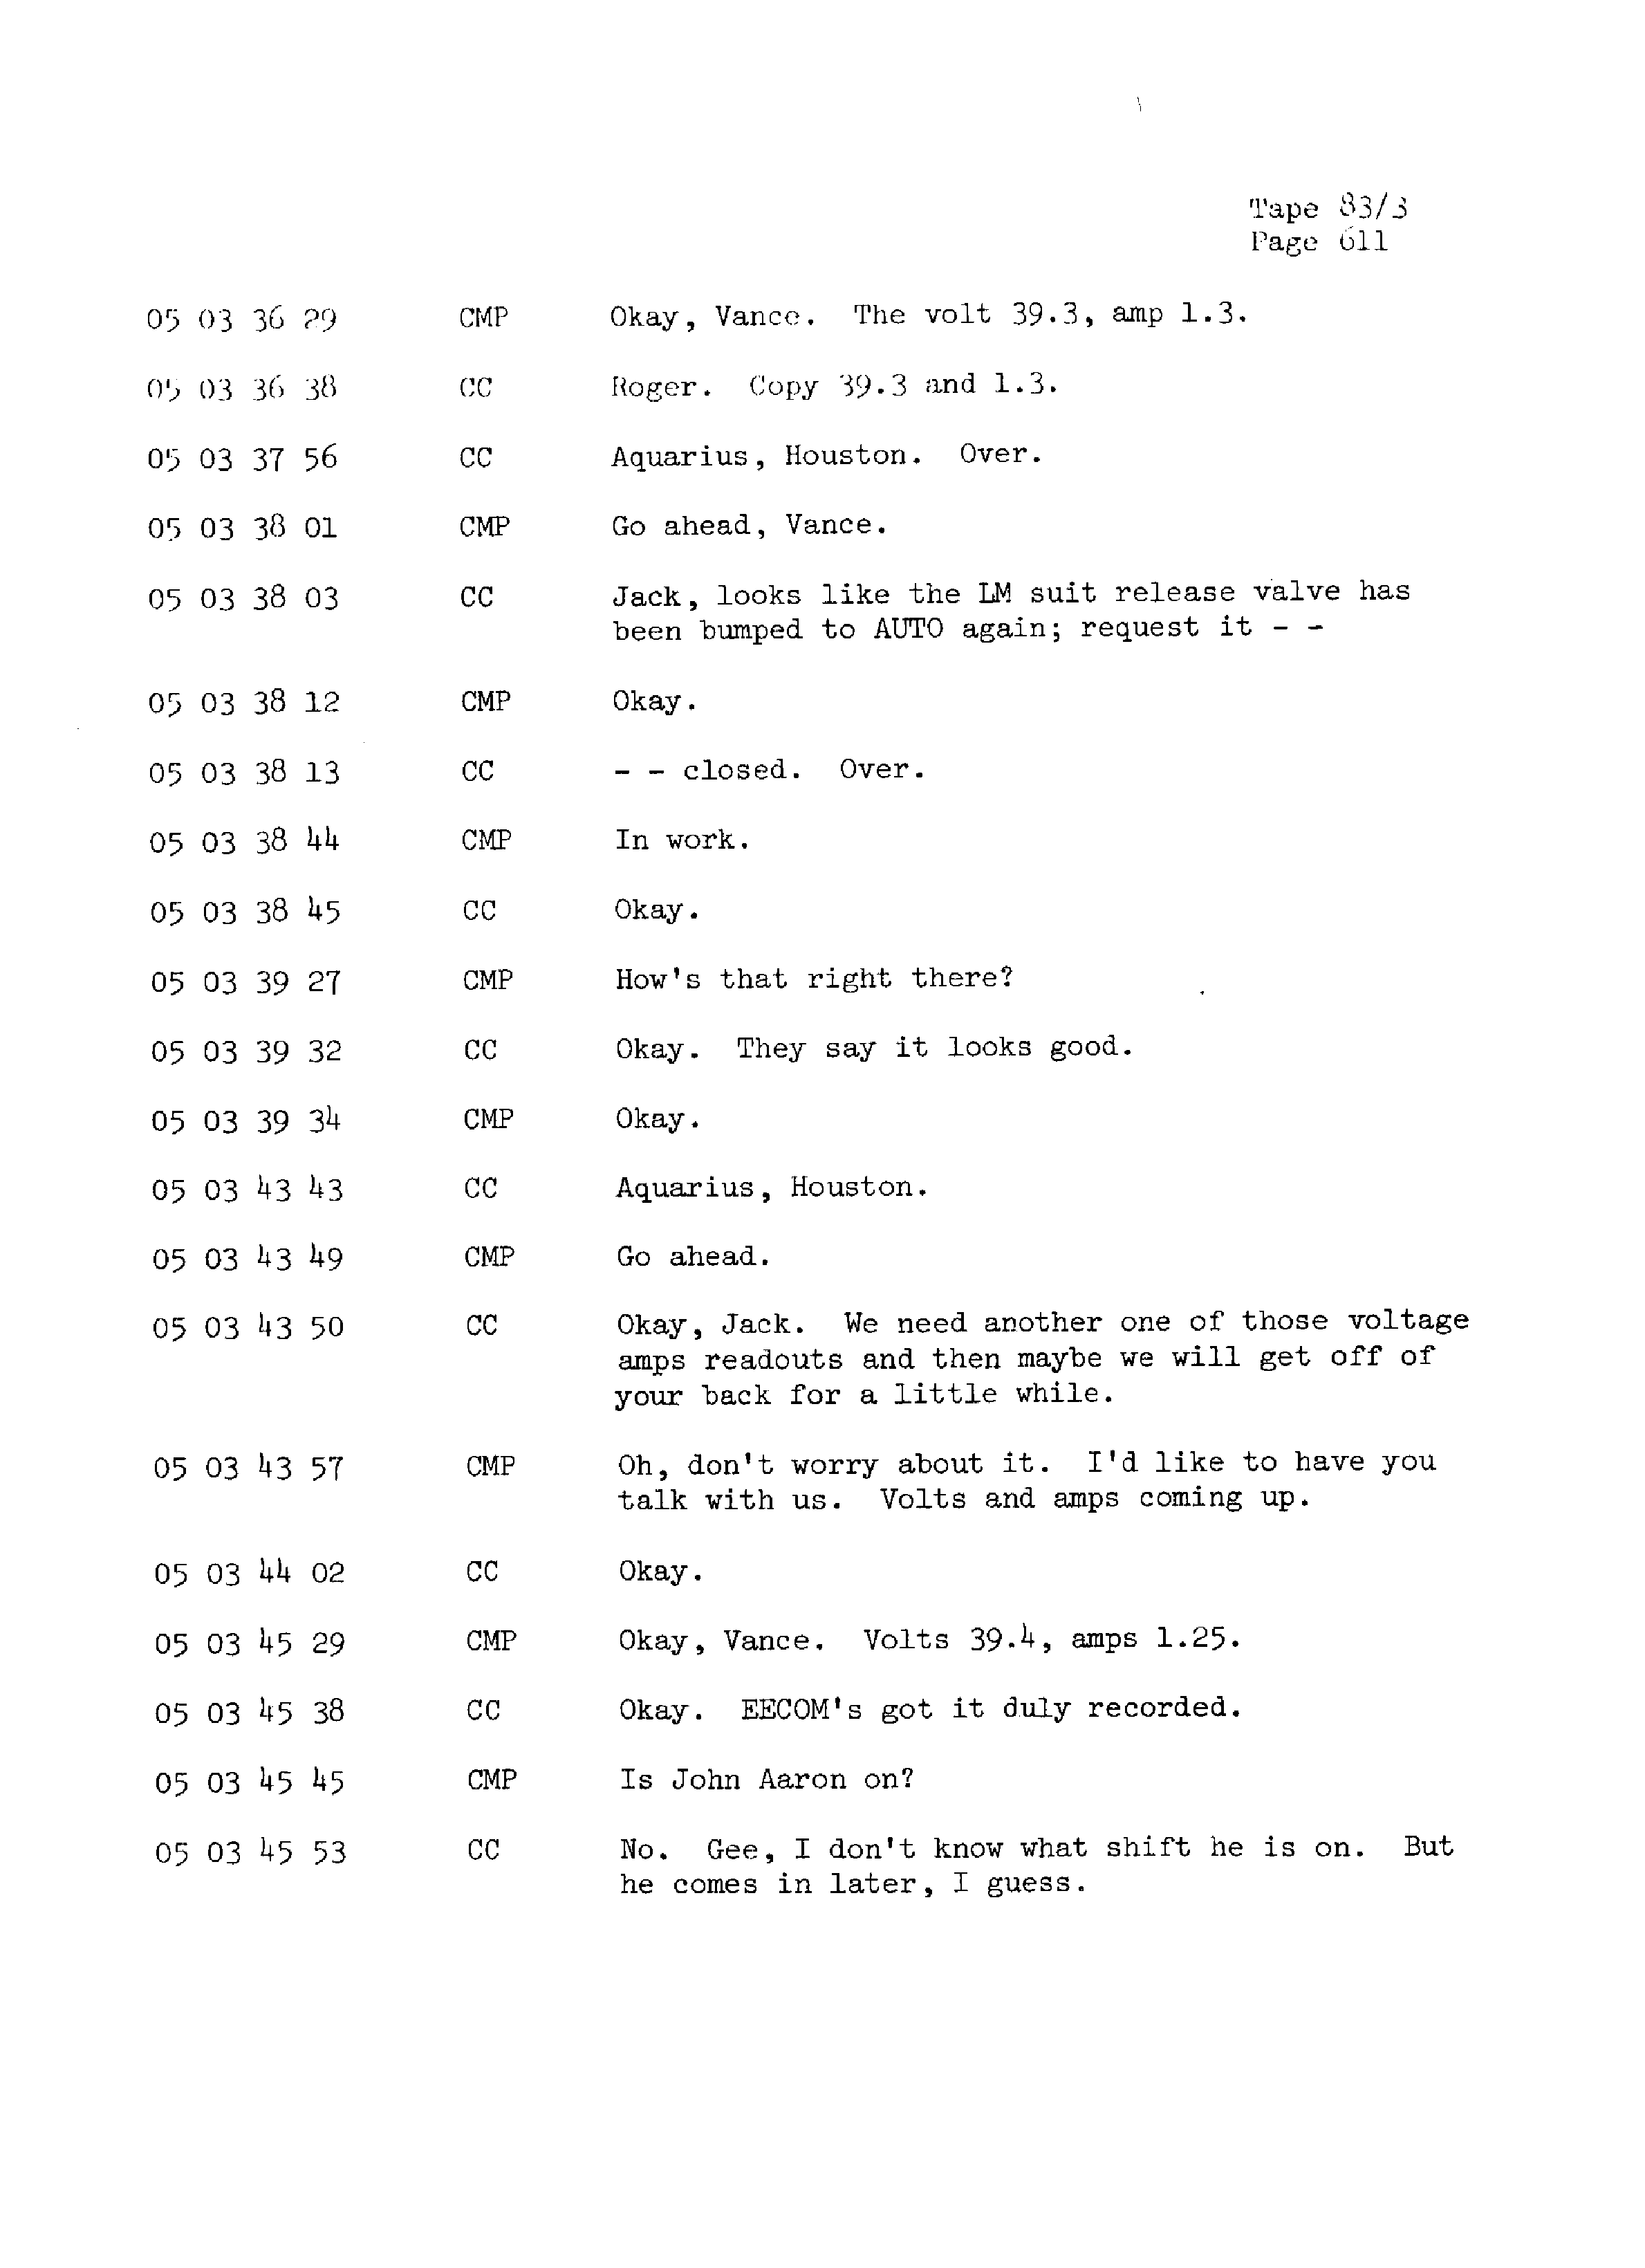 Page 618 of Apollo 13’s original transcript